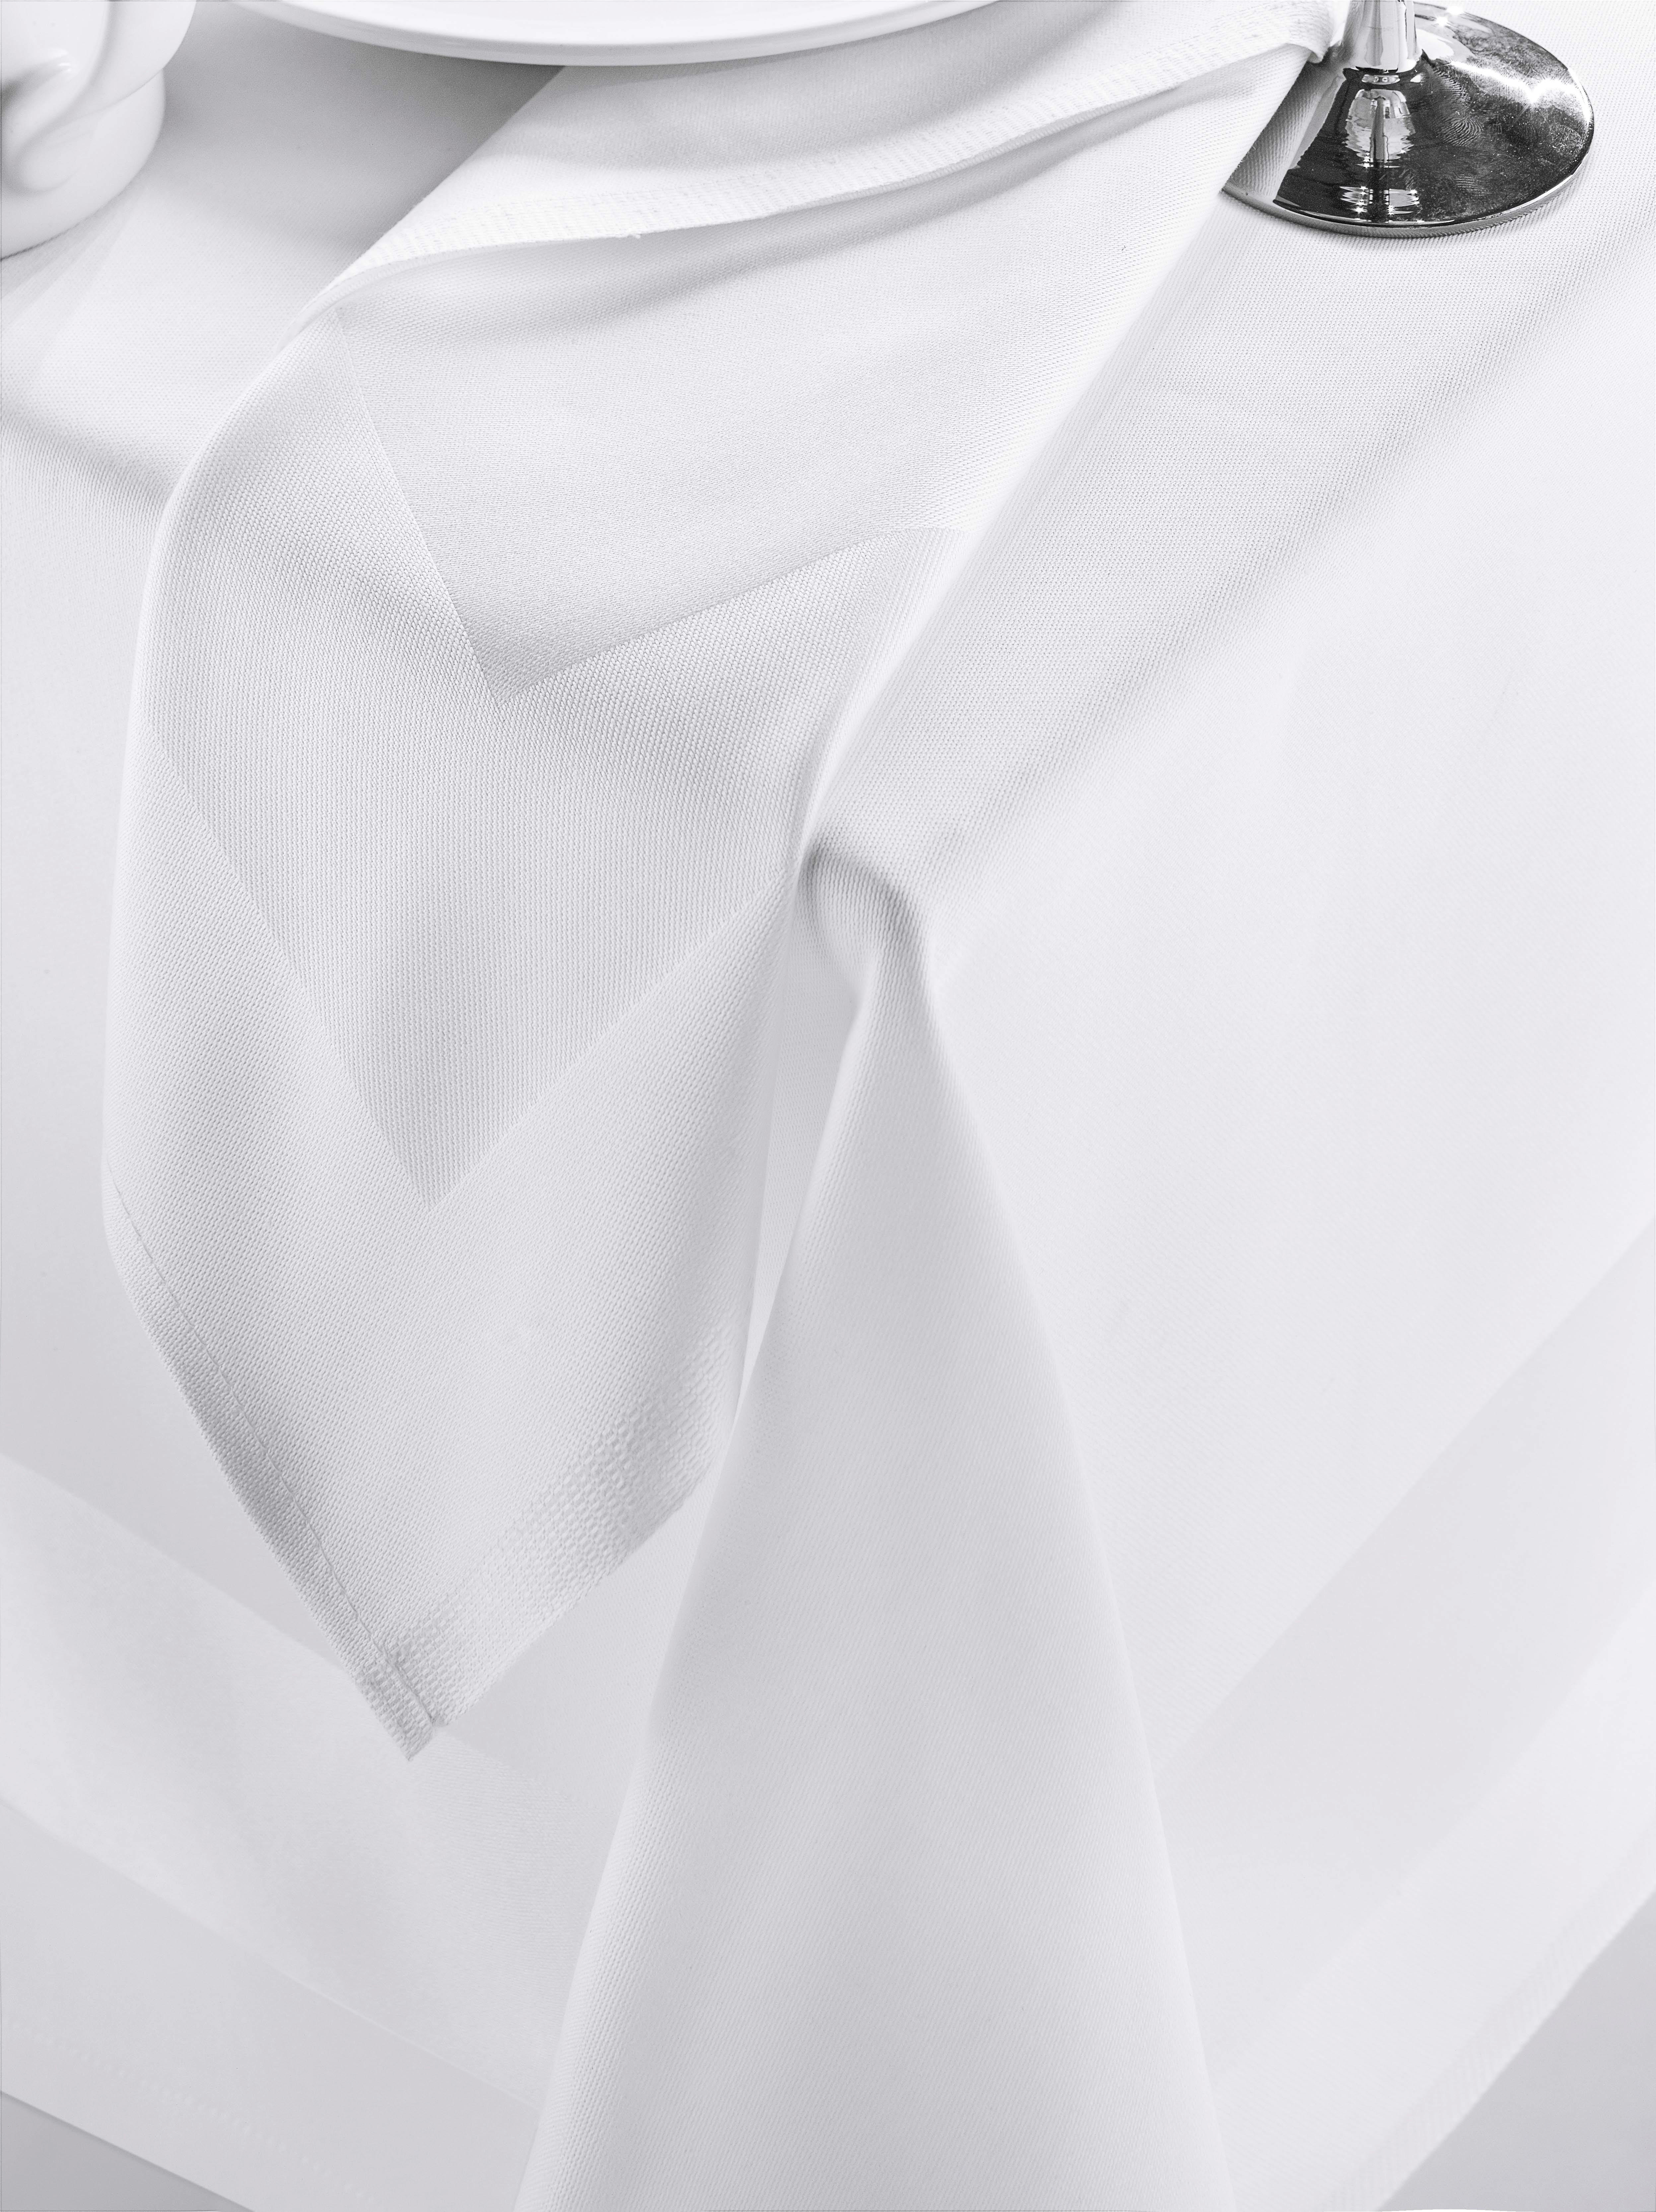 SALVETA 50/50 cm   - bijela, Konvencionalno, tekstil (50/50cm)